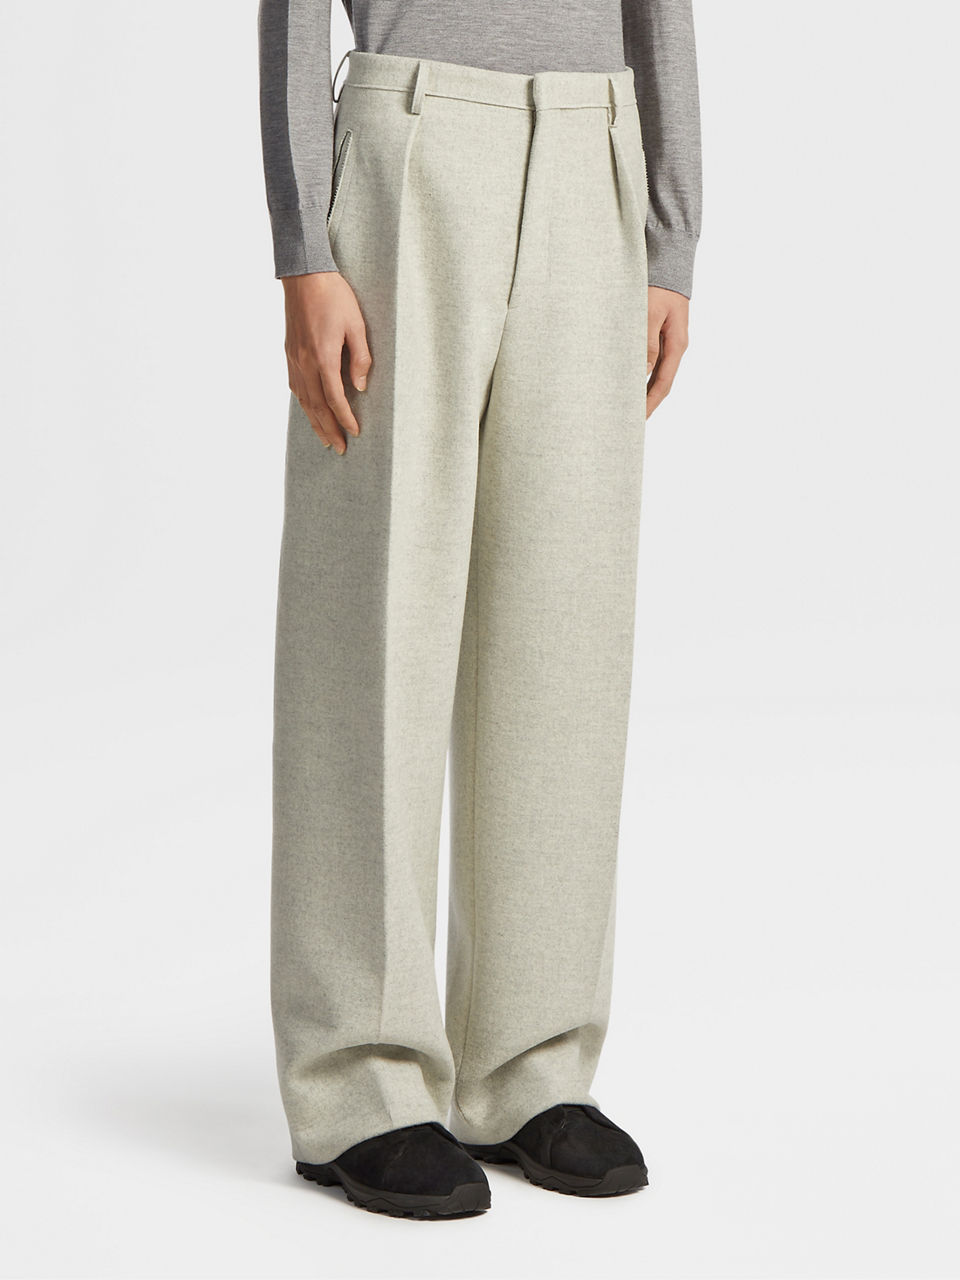 Wool-blend palazzo pants